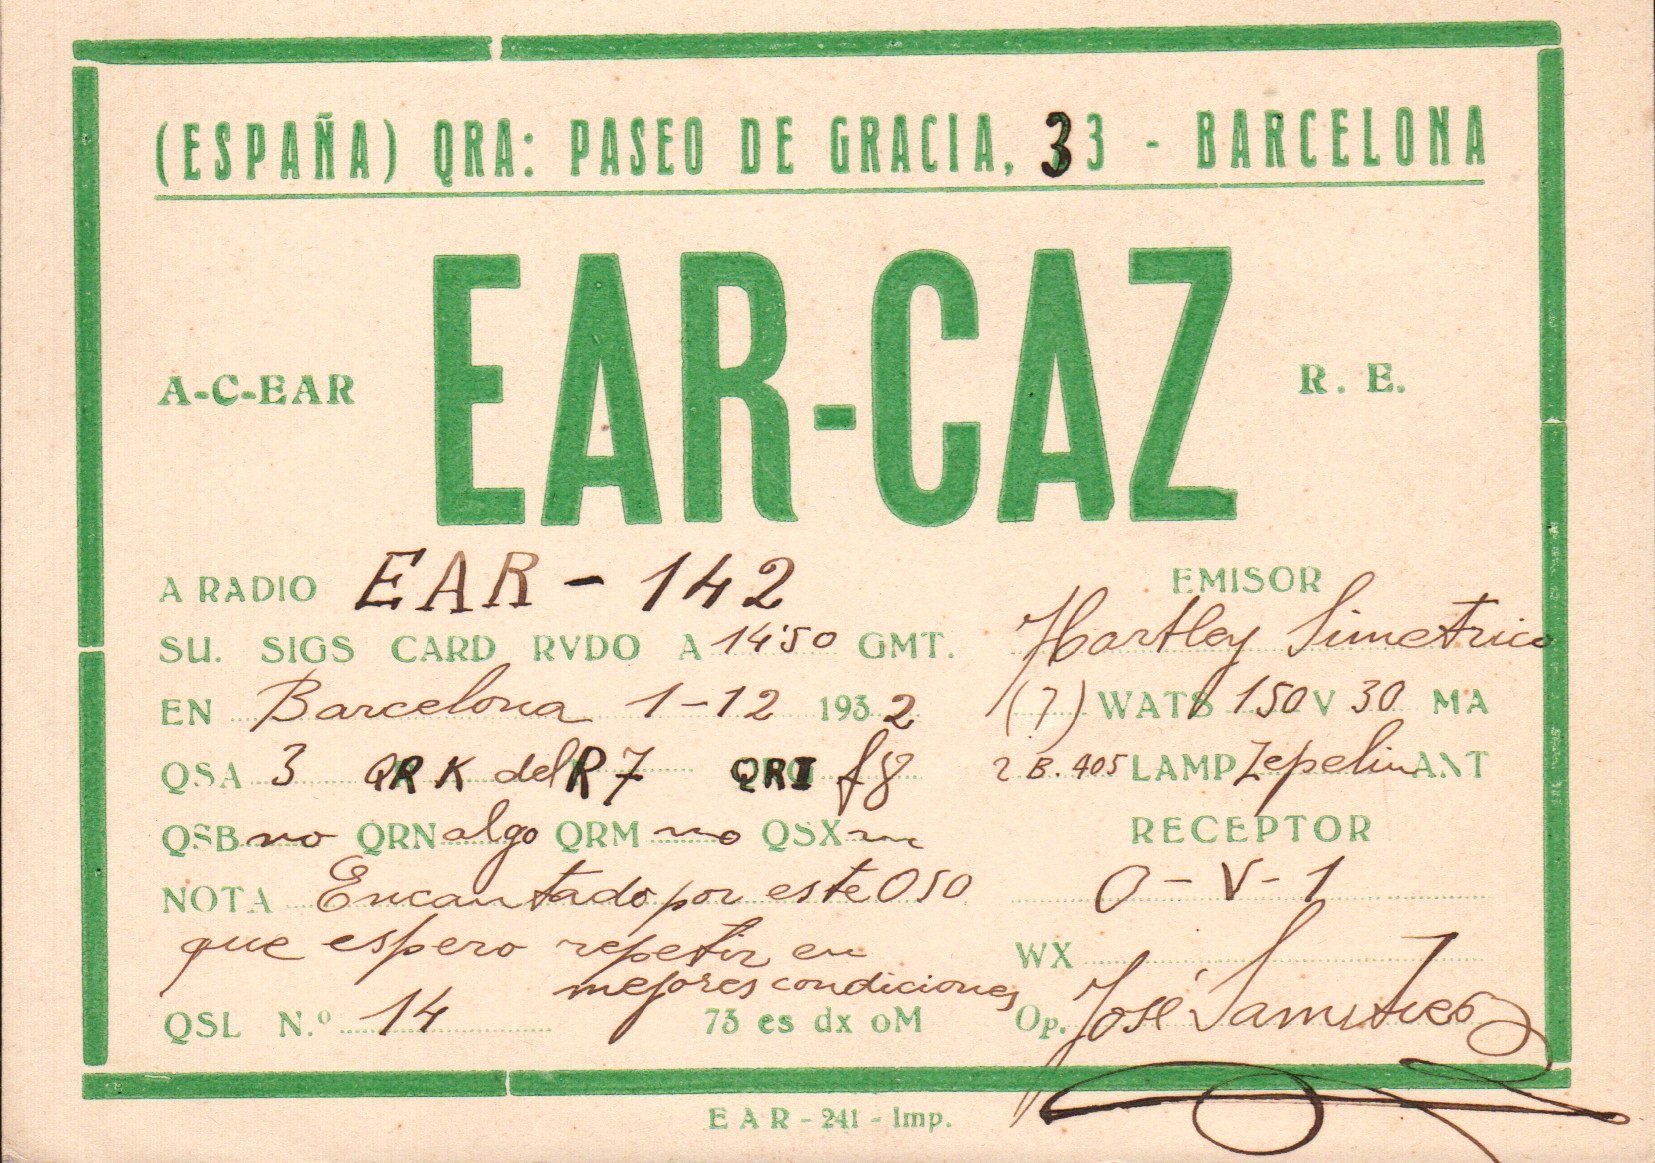 EAR-CAZ